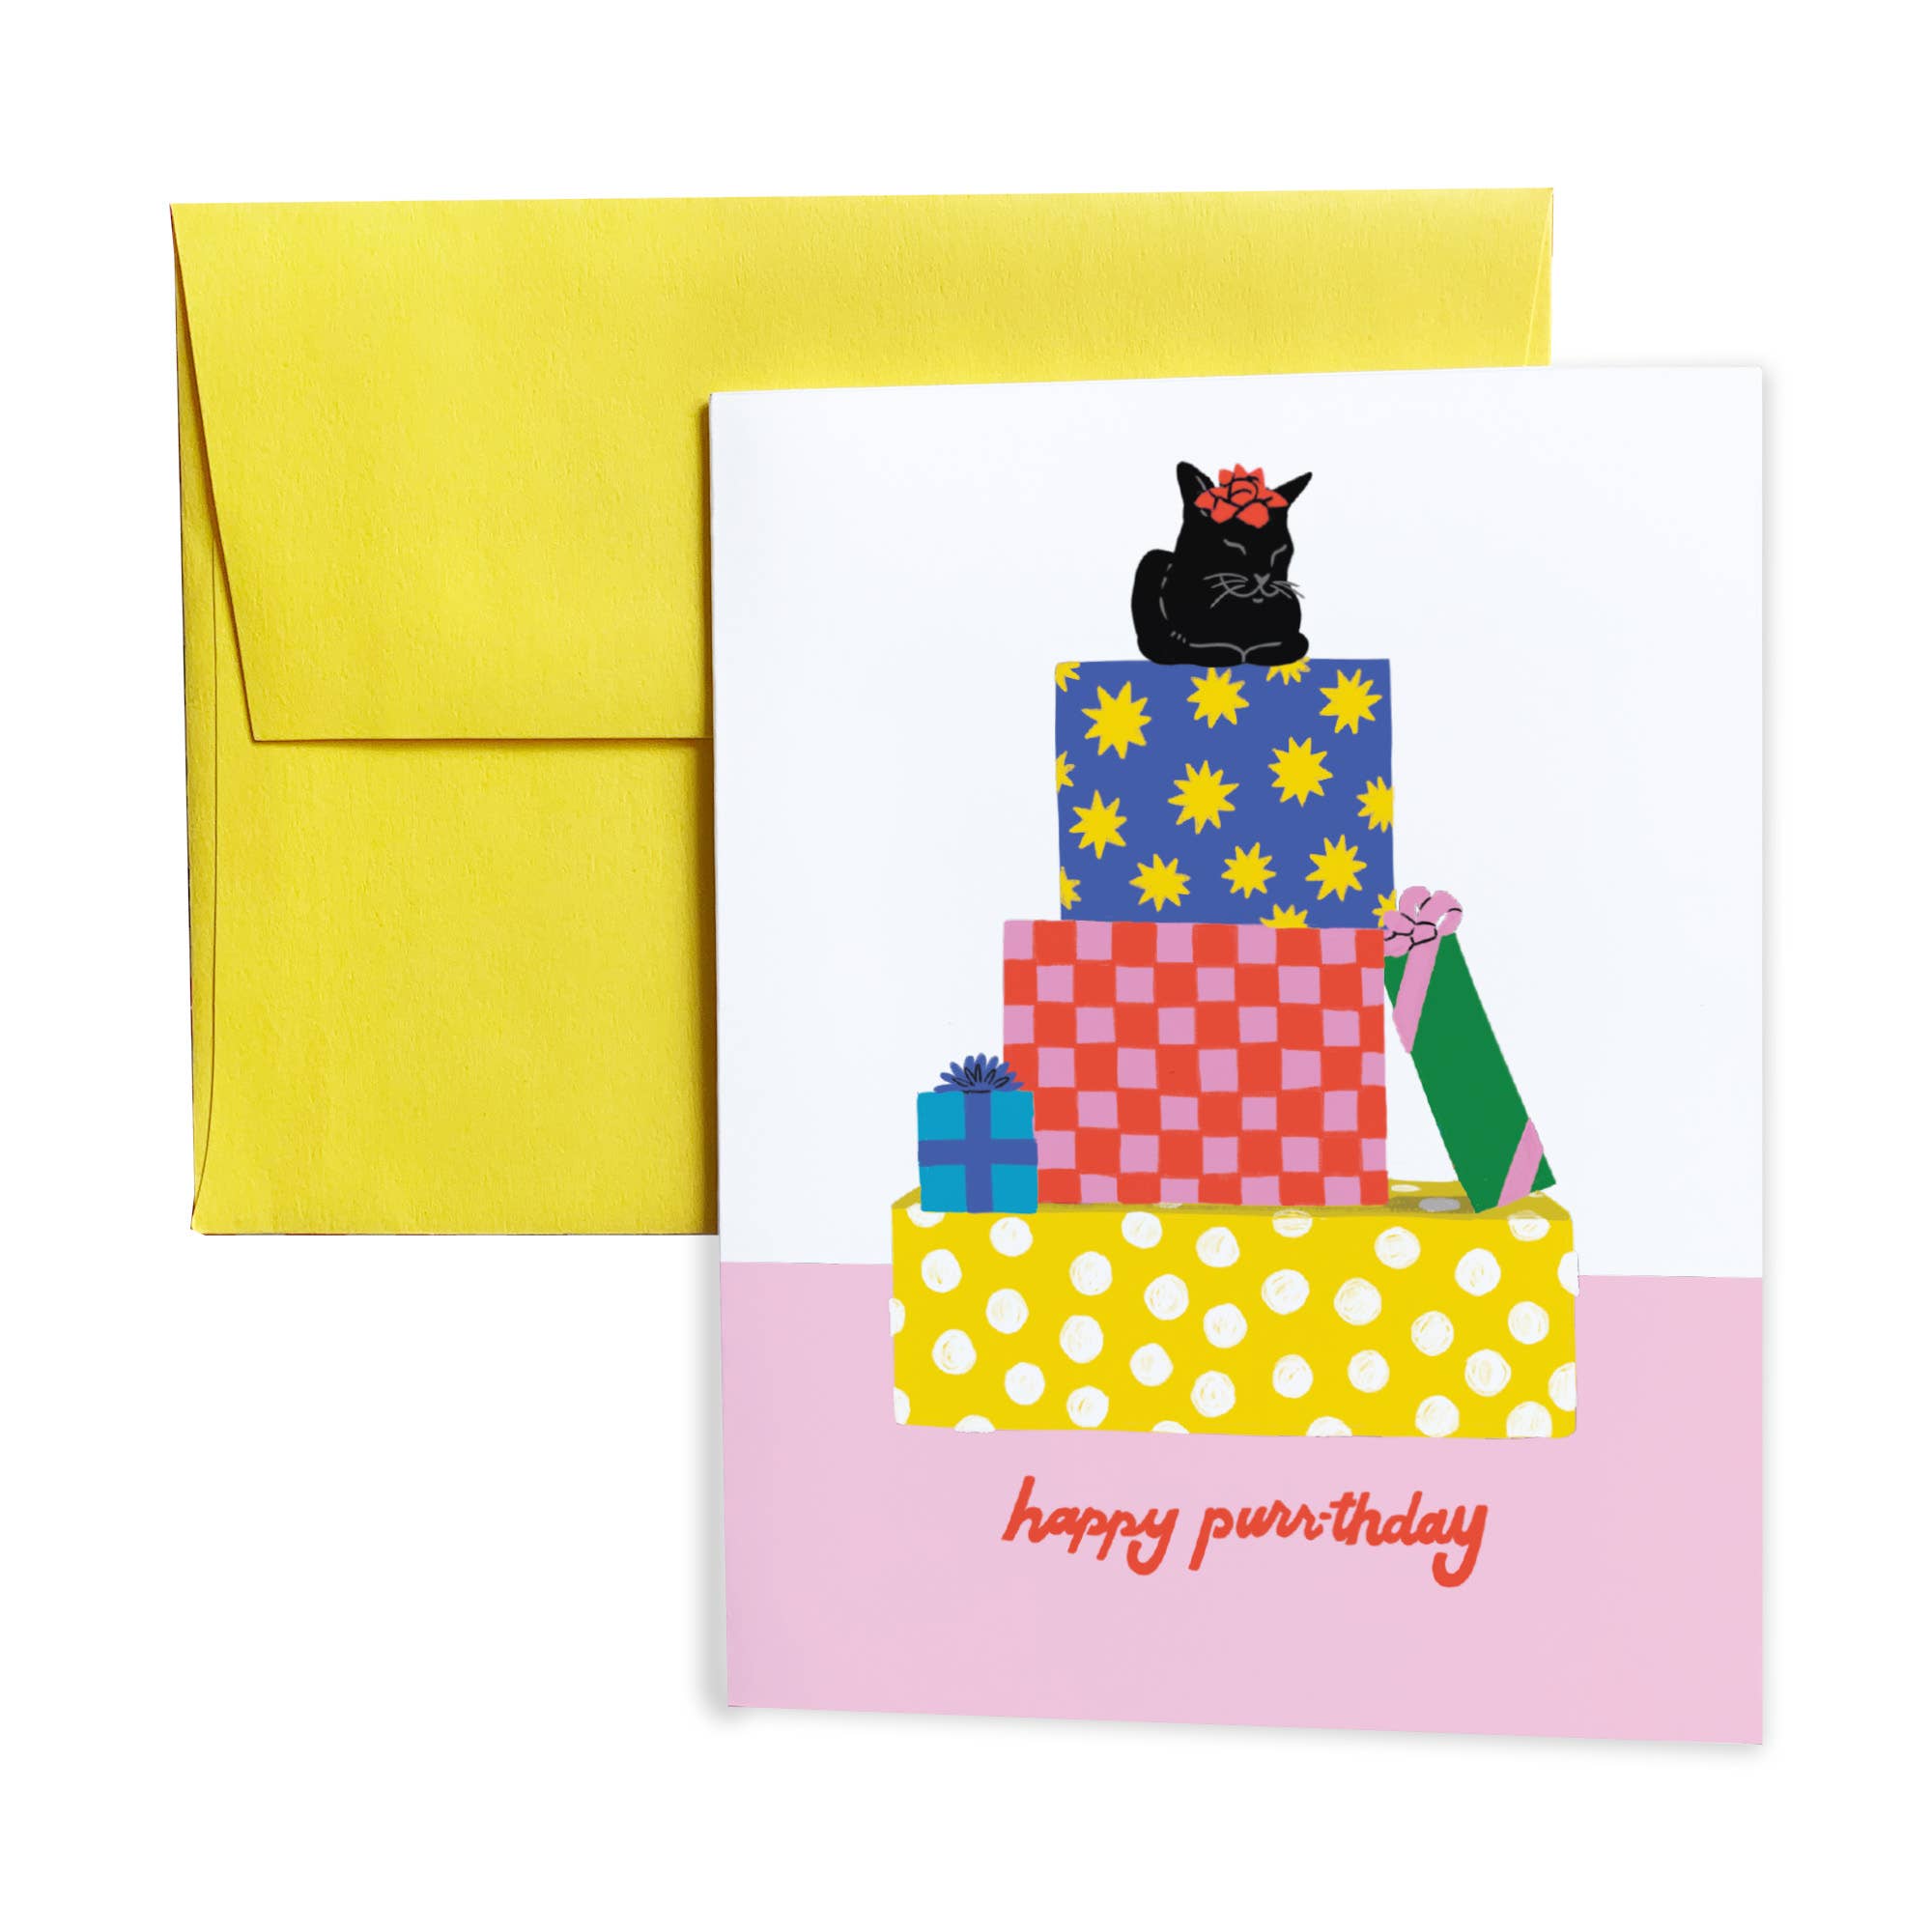 Happy Purrthday Birthday Card from 5 Eye Studio